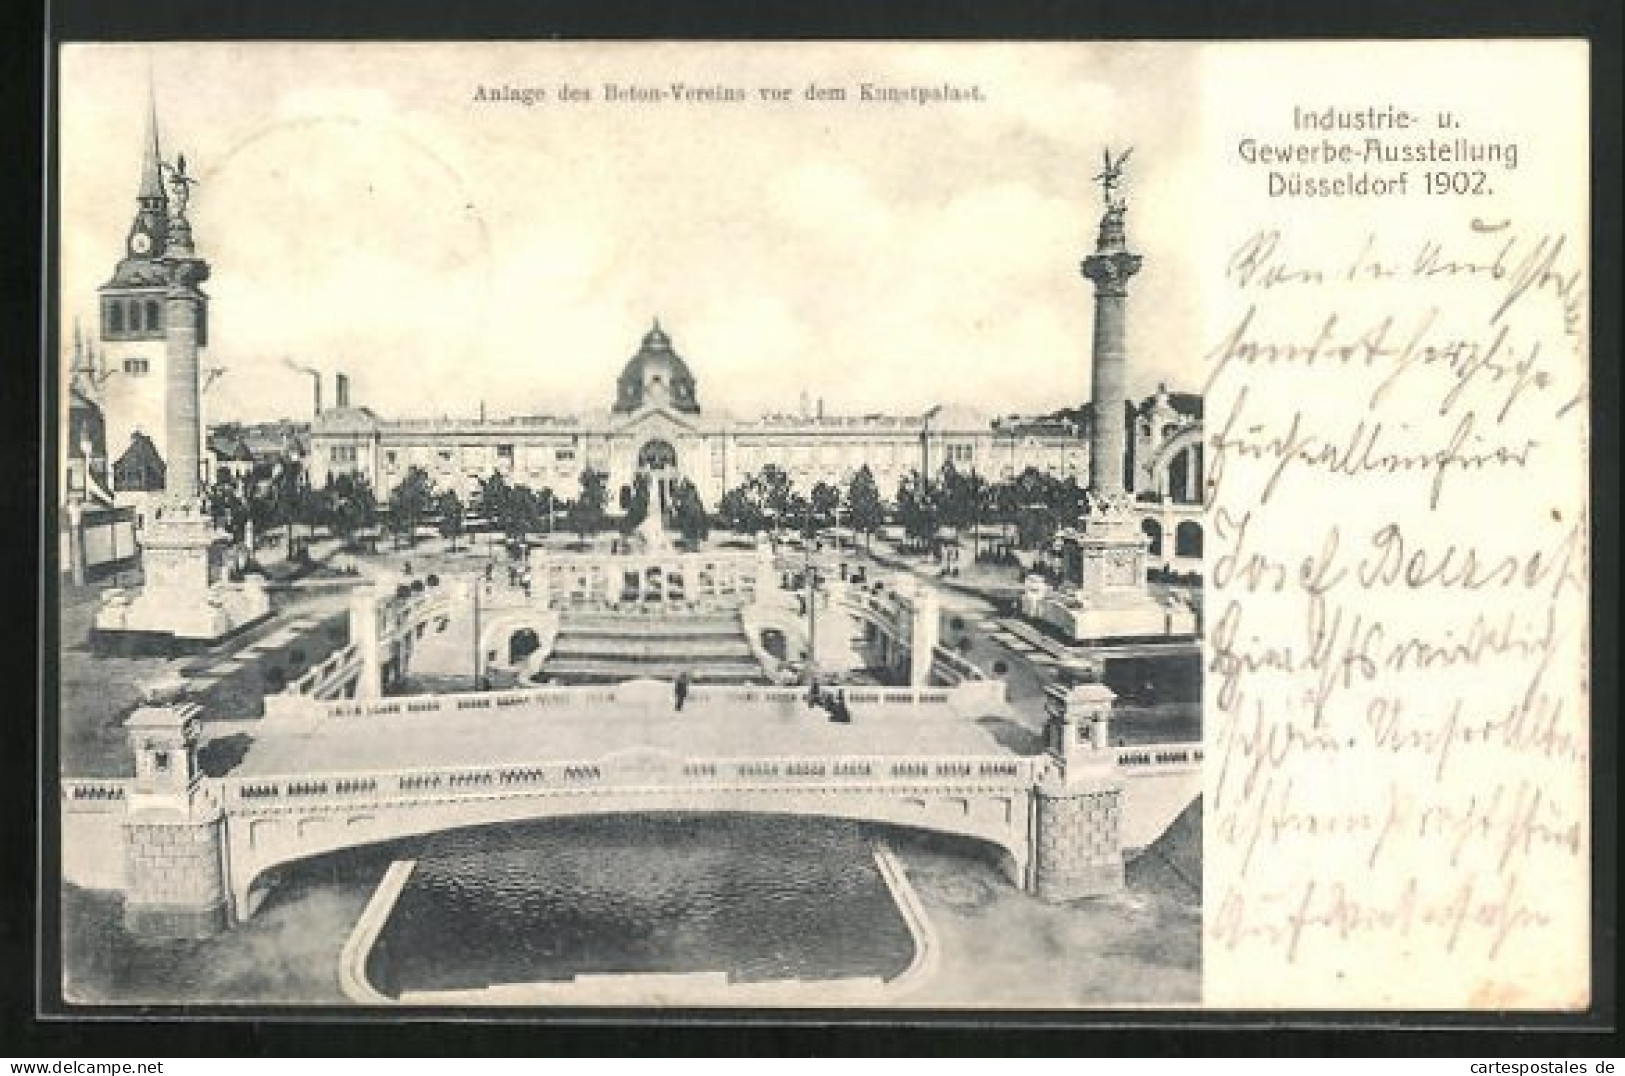 AK Düsseldorf, Gewerbe- & Industrie-Ausstellung 1902, Anlage Des Beton-Vereins Vor Dem Kunstpalast  - Tentoonstellingen